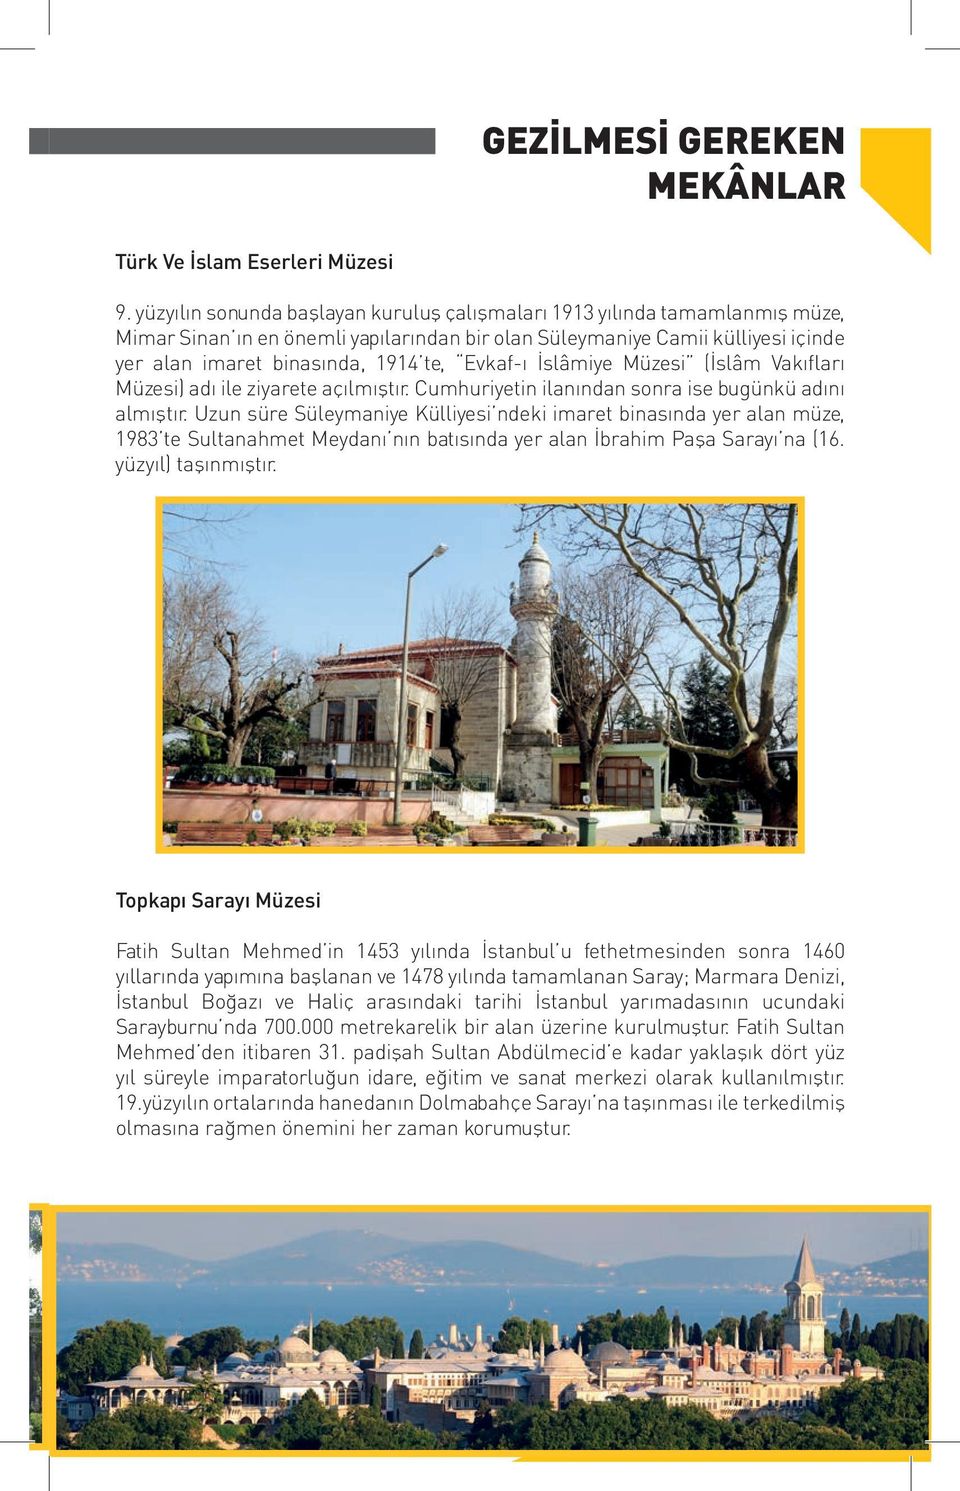 Evkaf-ı İslâmiye Müzesi (İslâm Vakıfları Müzesi) adı ile ziyarete açılmıştır. Cumhuriyetin ilanından sonra ise bugünkü adını almıştır.